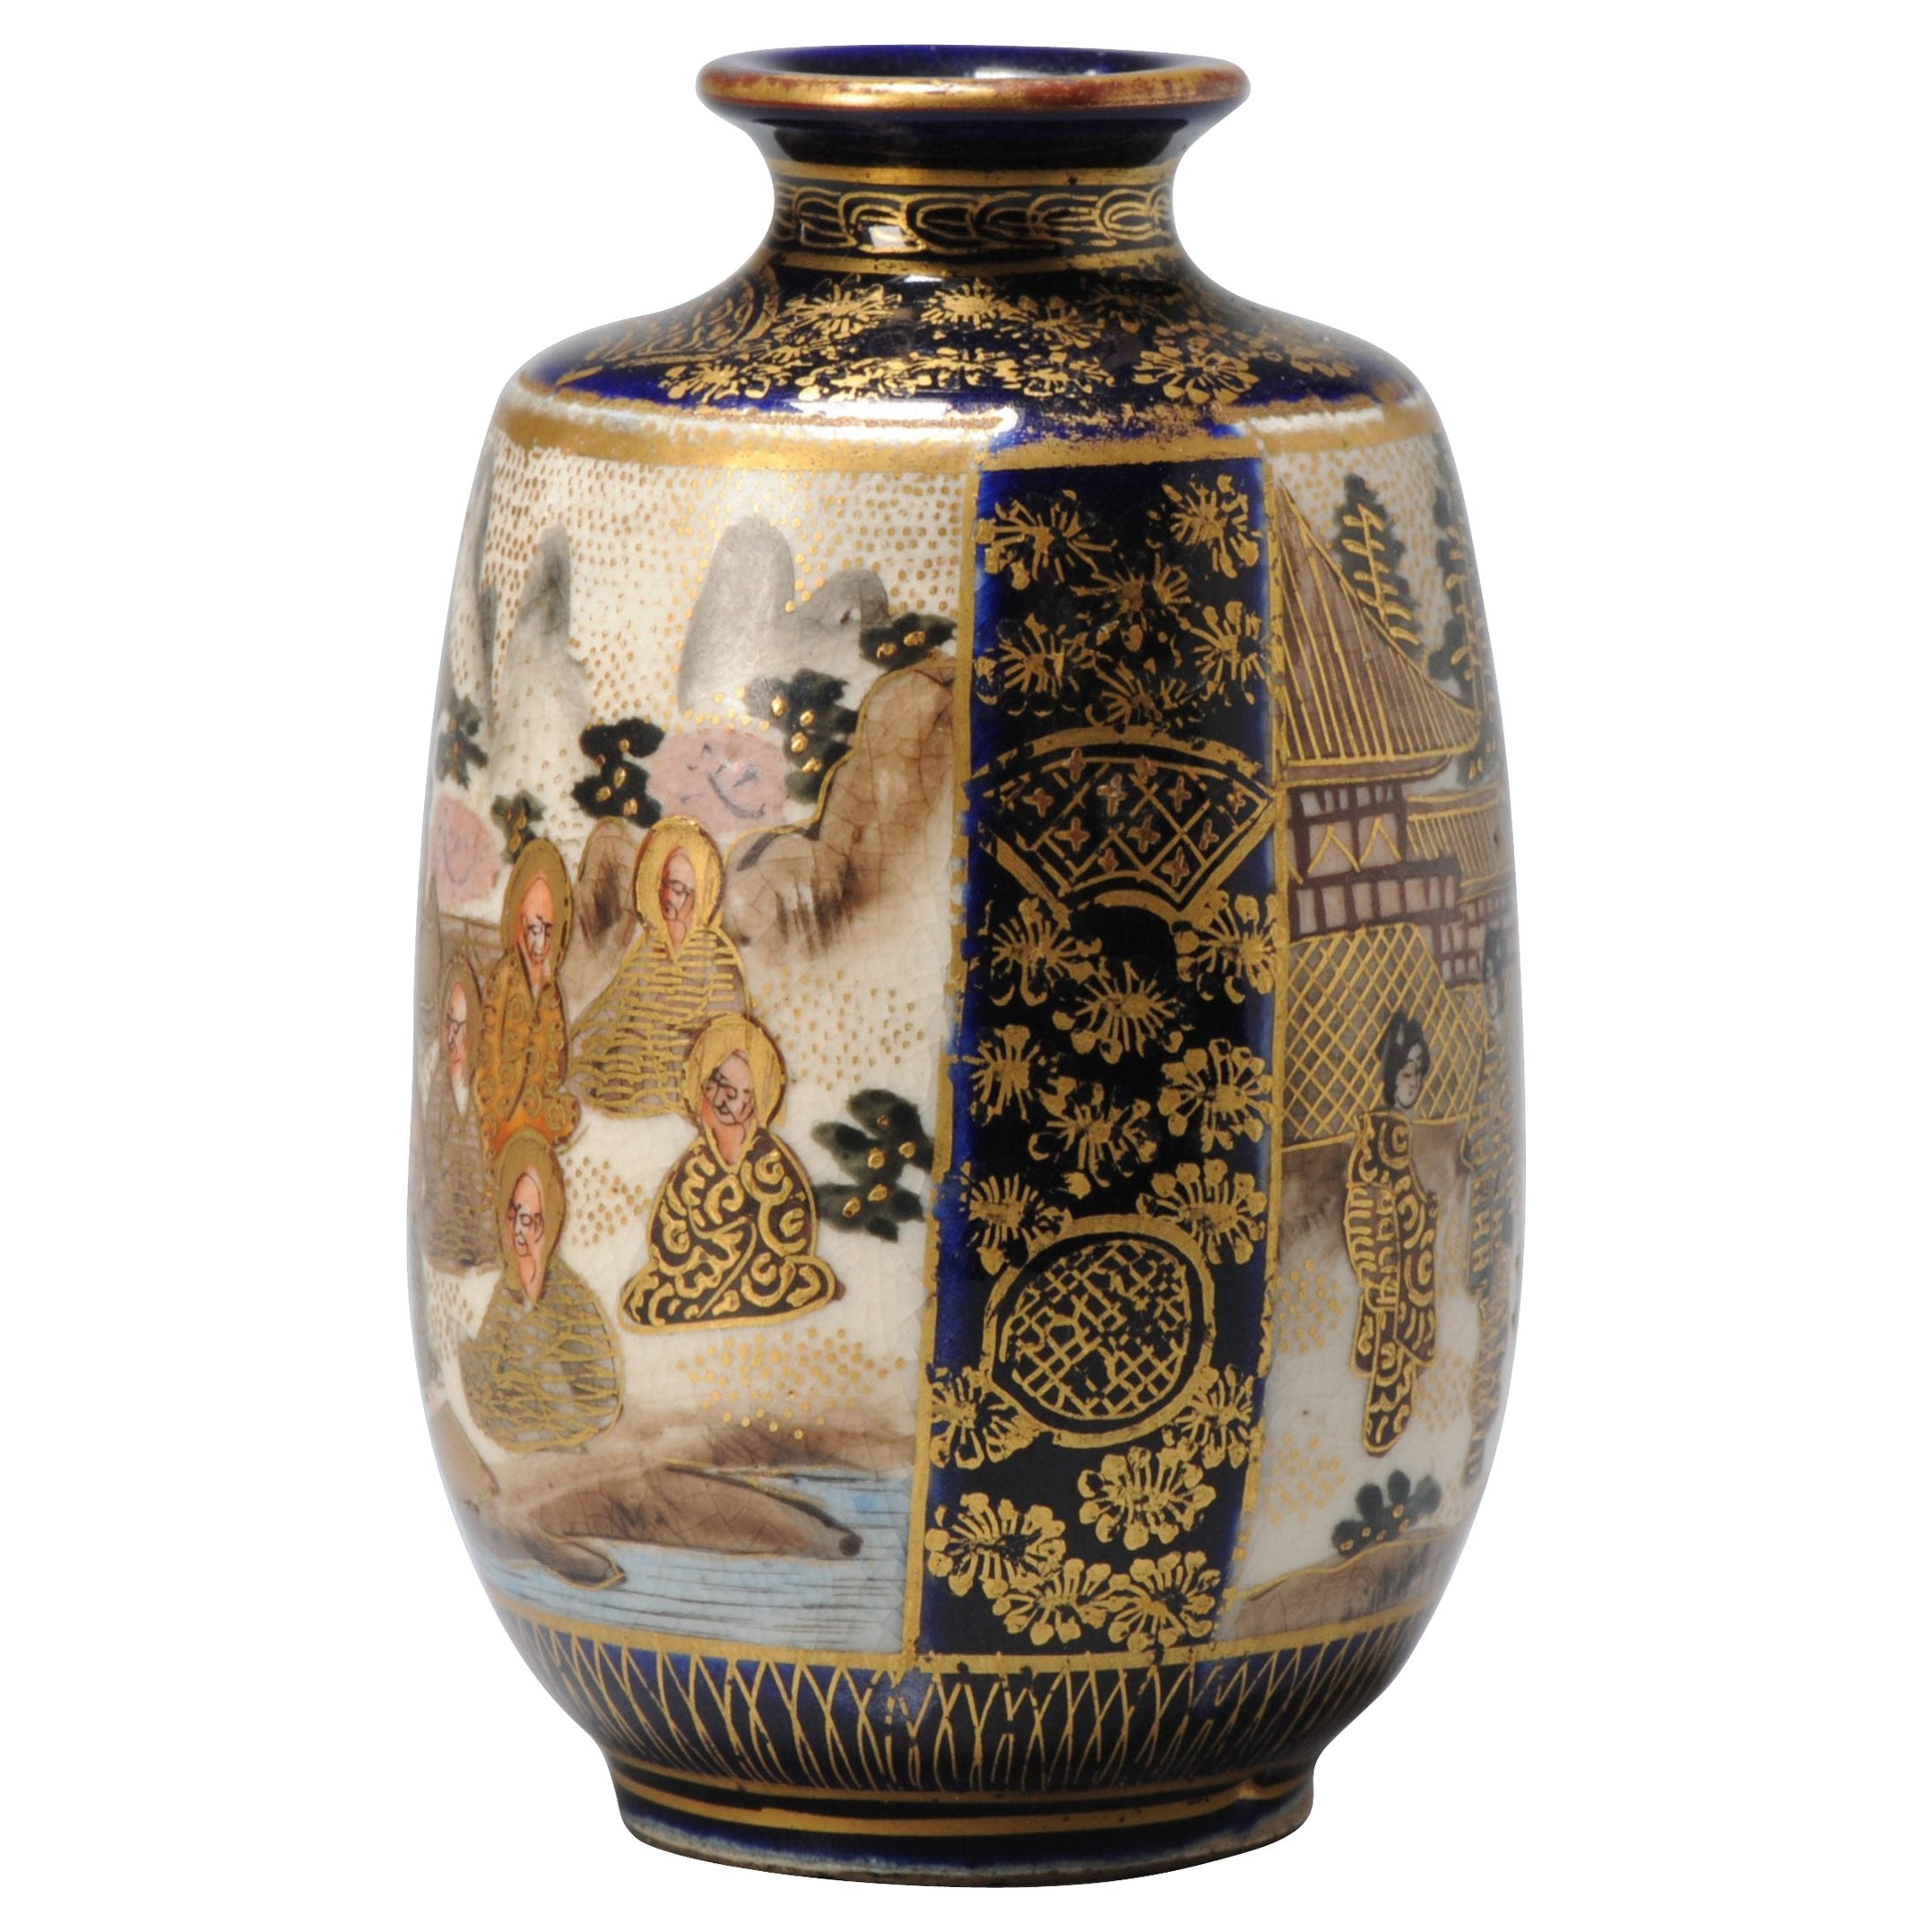 Small Sized Antique Meiji Period Japanese Satsuma Vase with Mark